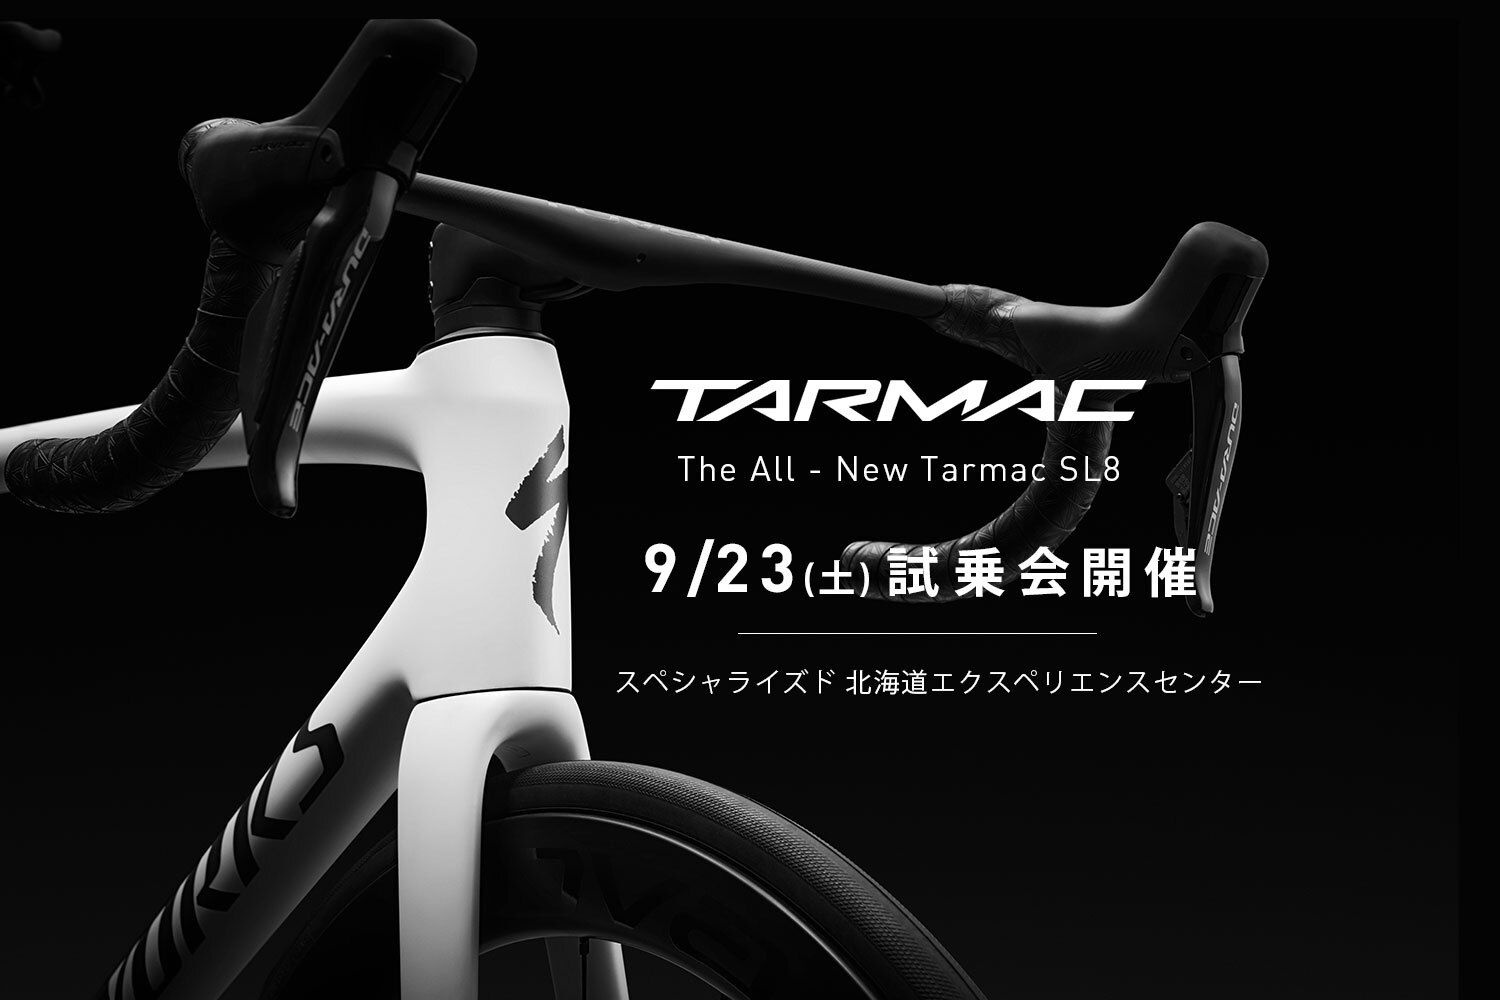 9/23(土) New Tarmac SL8試乗会開催